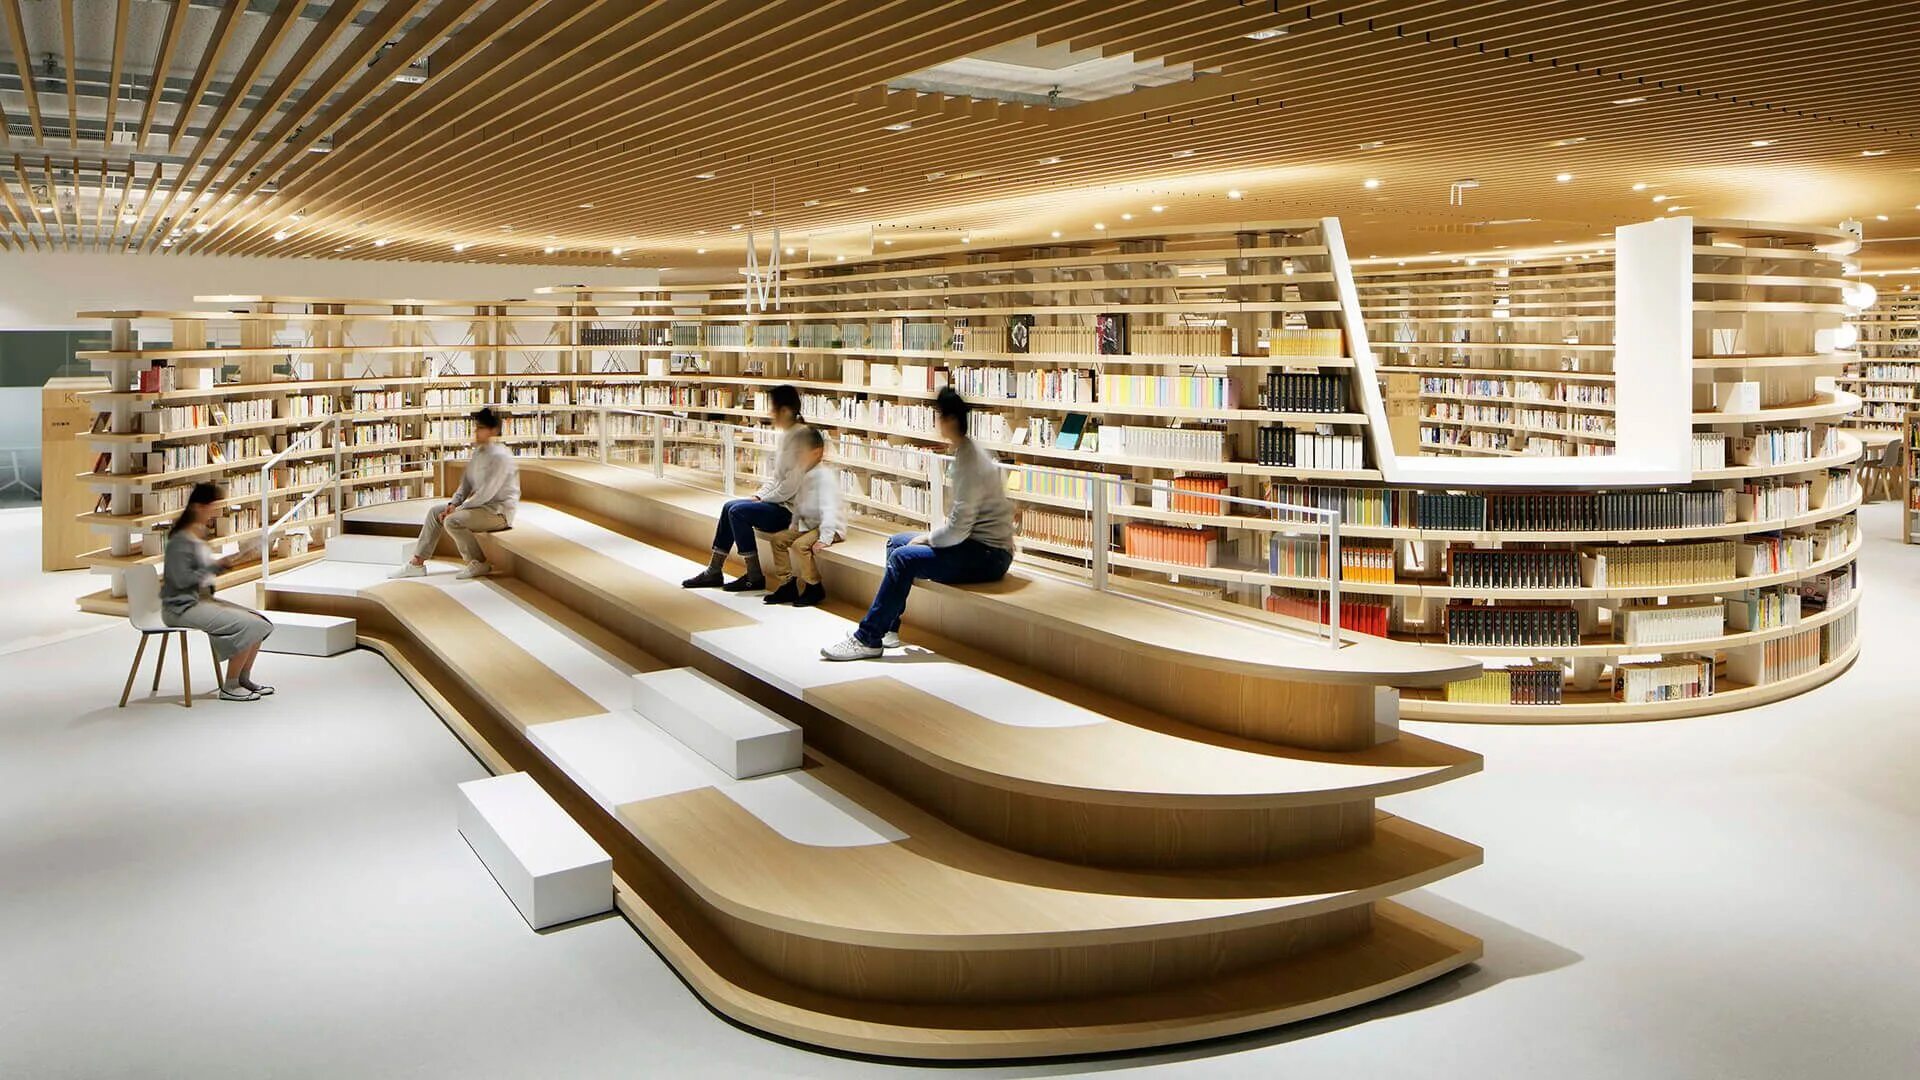 Материалов библиотеки цок. Библиотека Японии читальный зал. Интерьер современной библиотеки. Современная Школьная библиотека. Библиотека будущего.